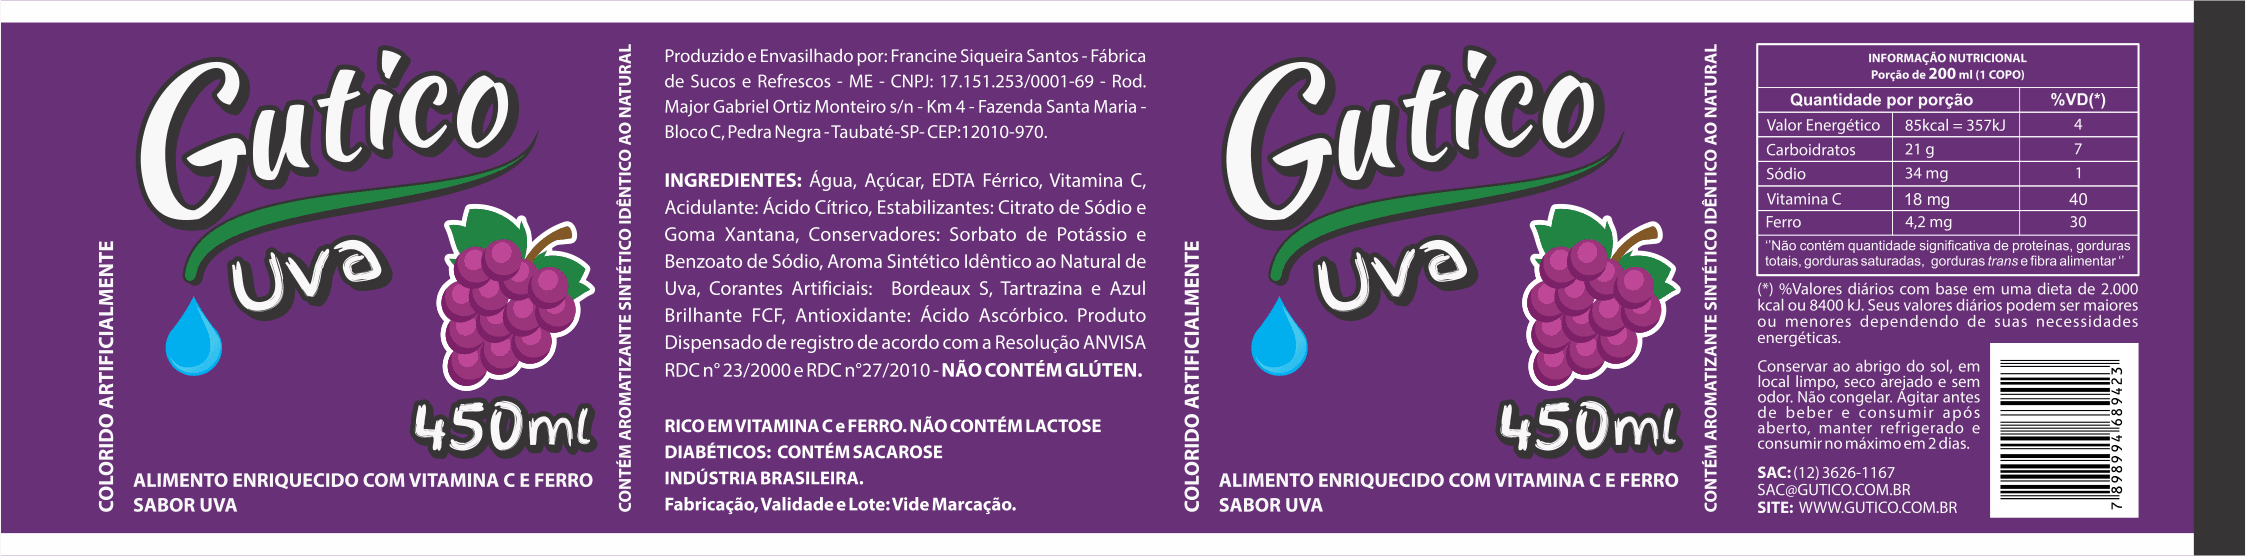 Gutico Refrescos - Refresco sabor uva